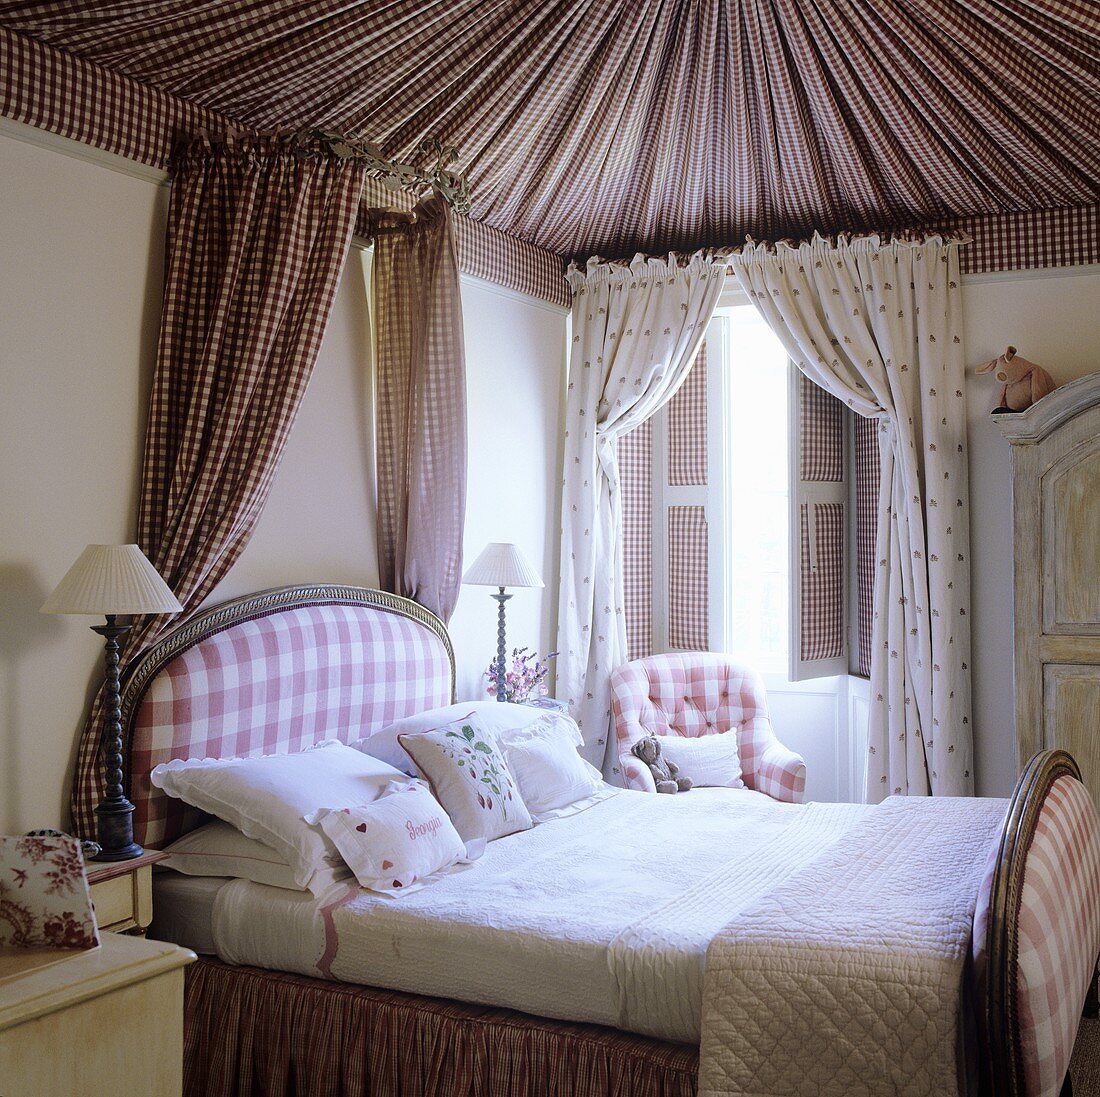 Schlafraum im traditionellen englischen Landhaus - Stoffhimmel über gesamte Zimmerdecke und Bett mit kleinem Baldachin